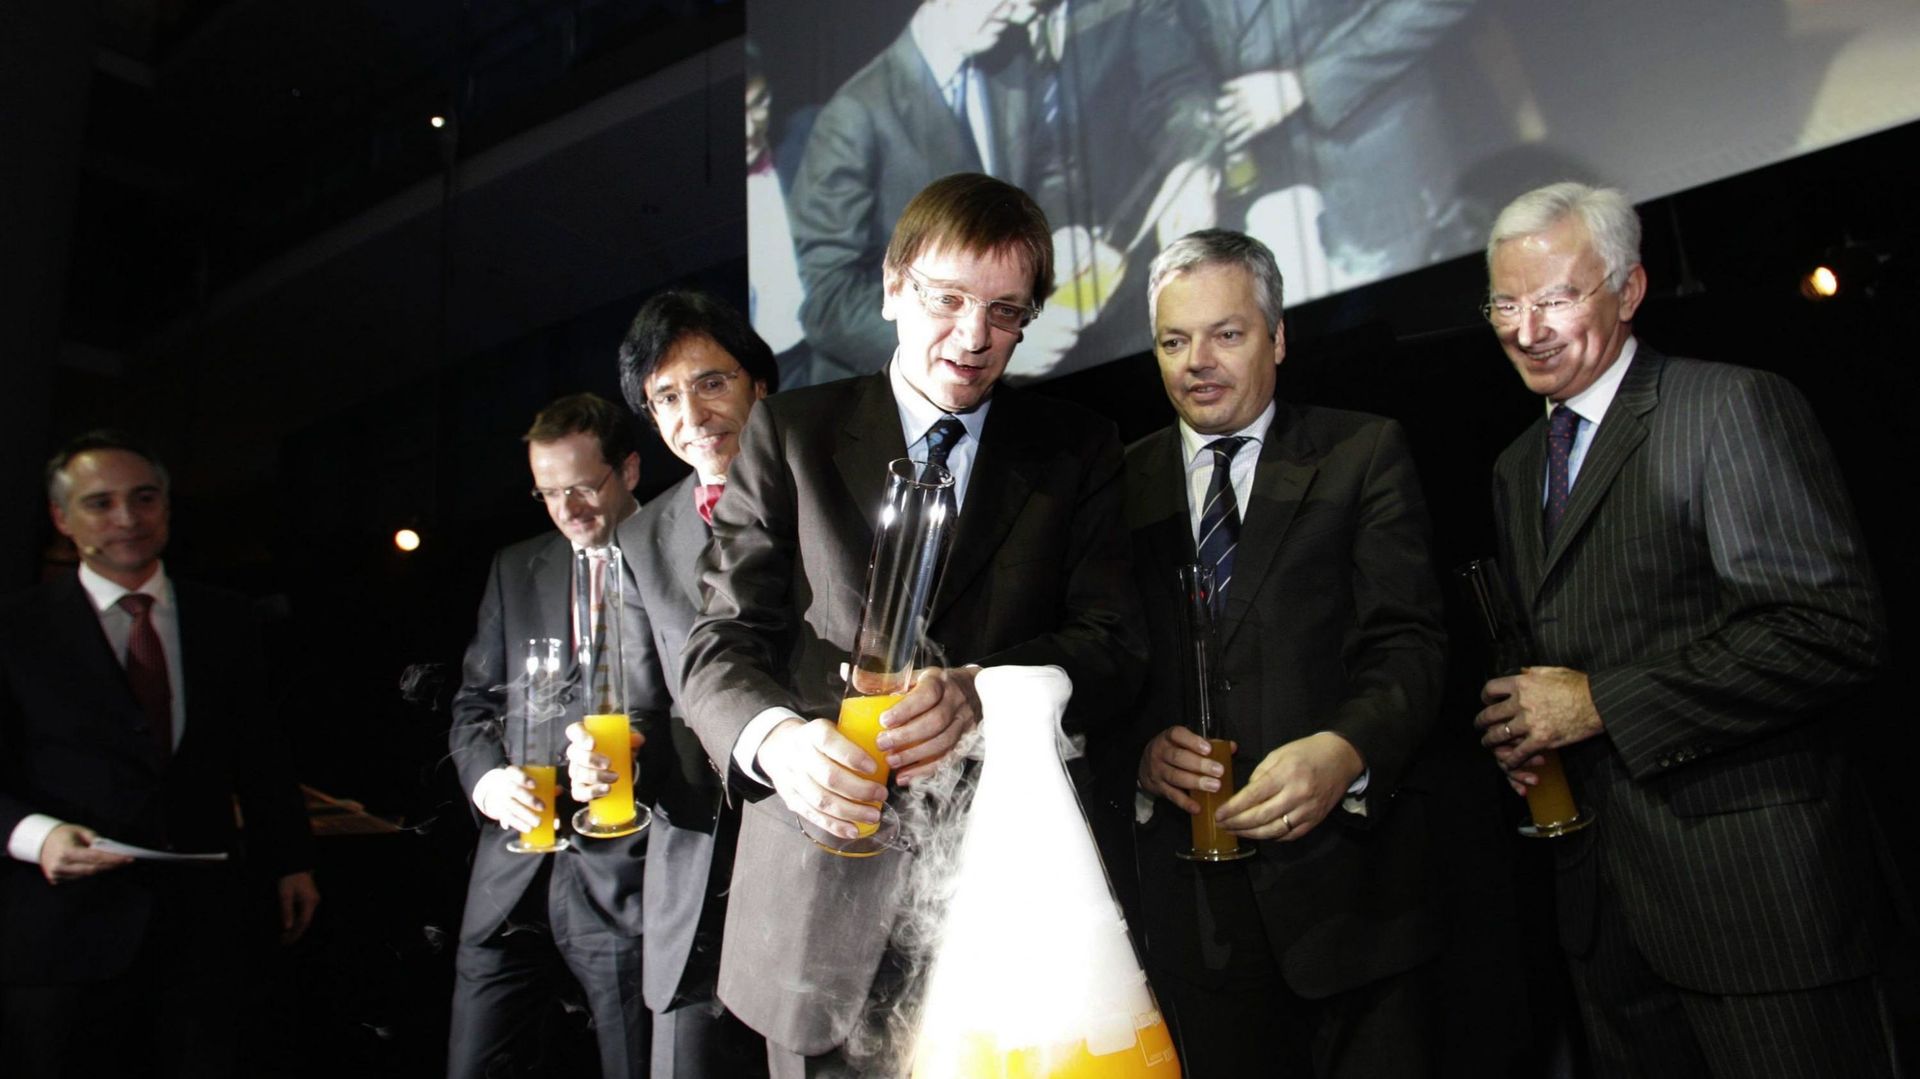 Le Premier ministre Guy Verhofstadt (Open VLD) inaugurant en 2007 un centre de contrôle de vaccins chez GSK à Wavre.